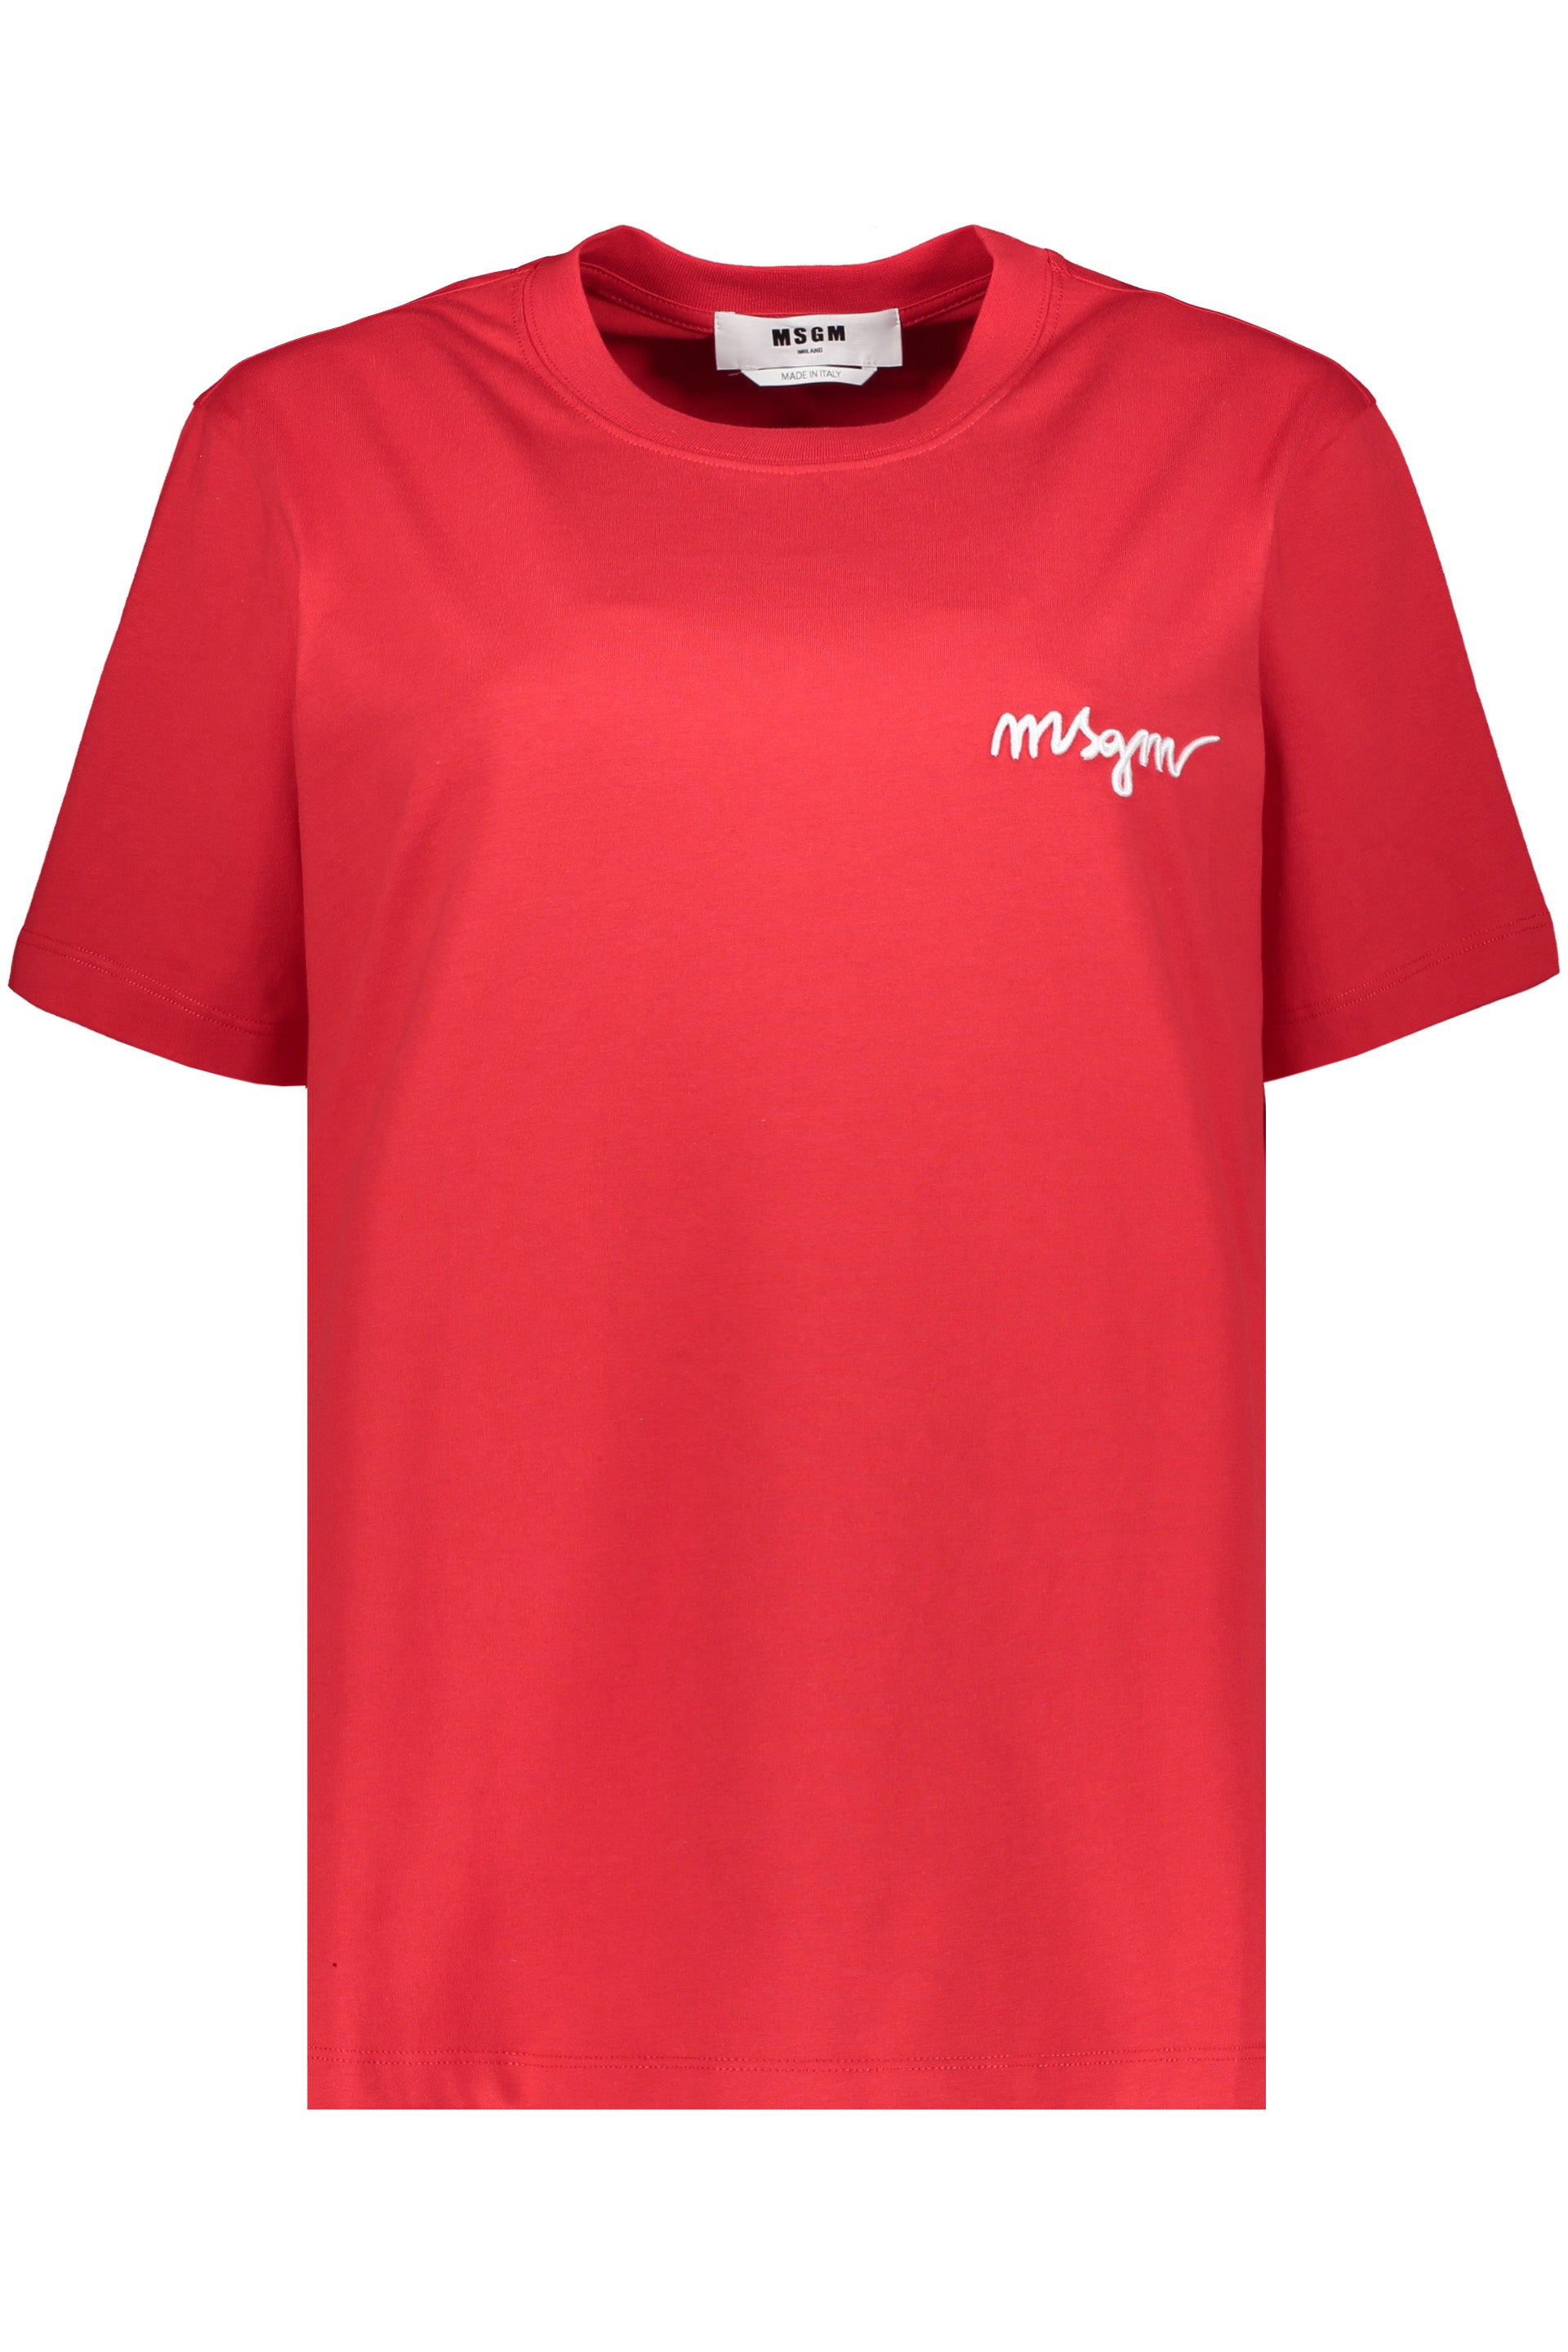 Cotton T-shirt-MSGM-OUTLET-SALE-M-ARCHIVIST